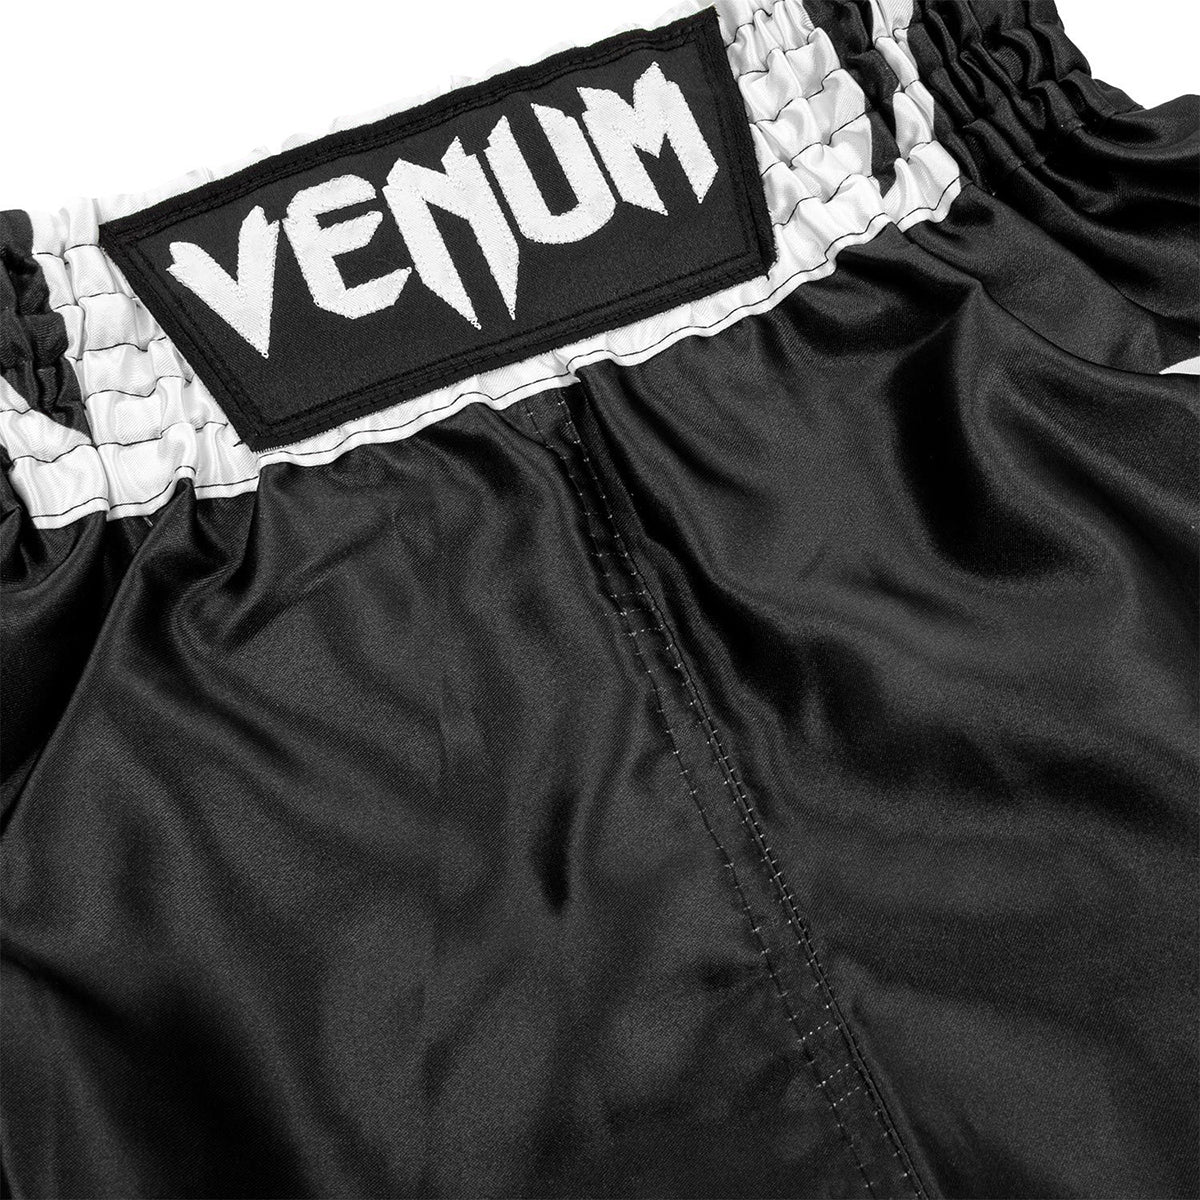 Venum Kids Elite Boxing Shorts - Black/White Venum